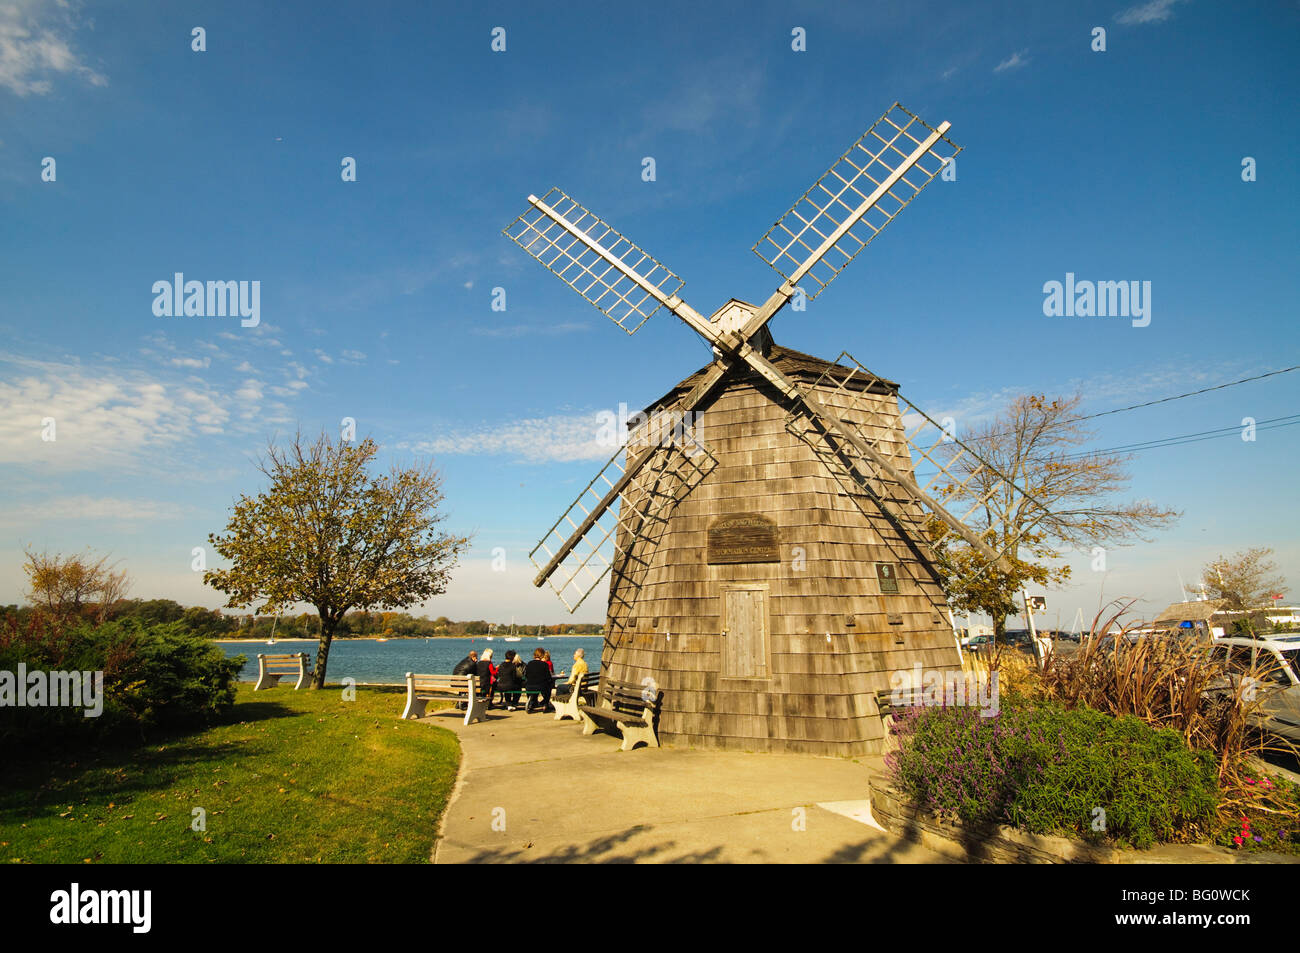 Modell von Beebe Windmühle, Sag Harbor, The Hamptons, Long Island, New York Staat, Vereinigte Staaten von Amerika, Nordamerika Stockfoto